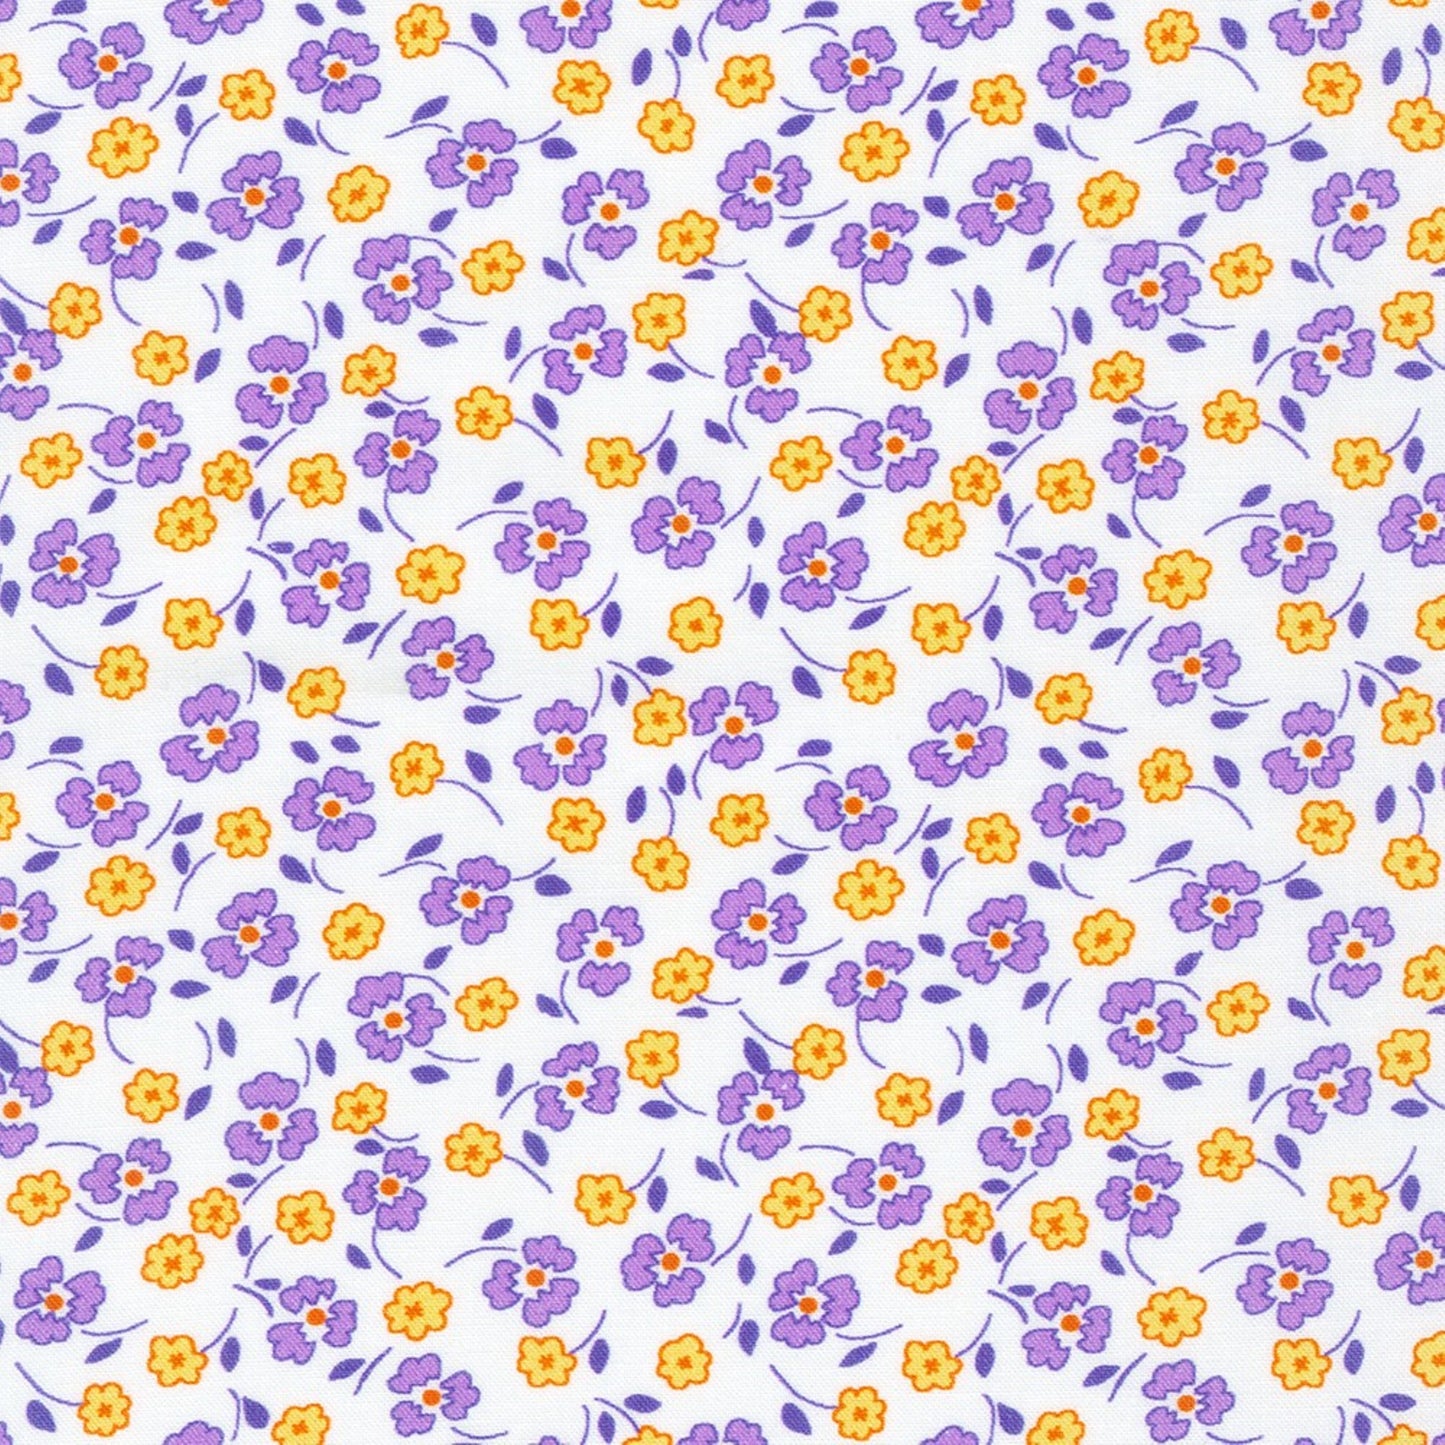 Little Blossoms Debbie Beaves 1930's reproduction bundle - 4 purple Fat Quarters Kaufman cotton quilt fabric